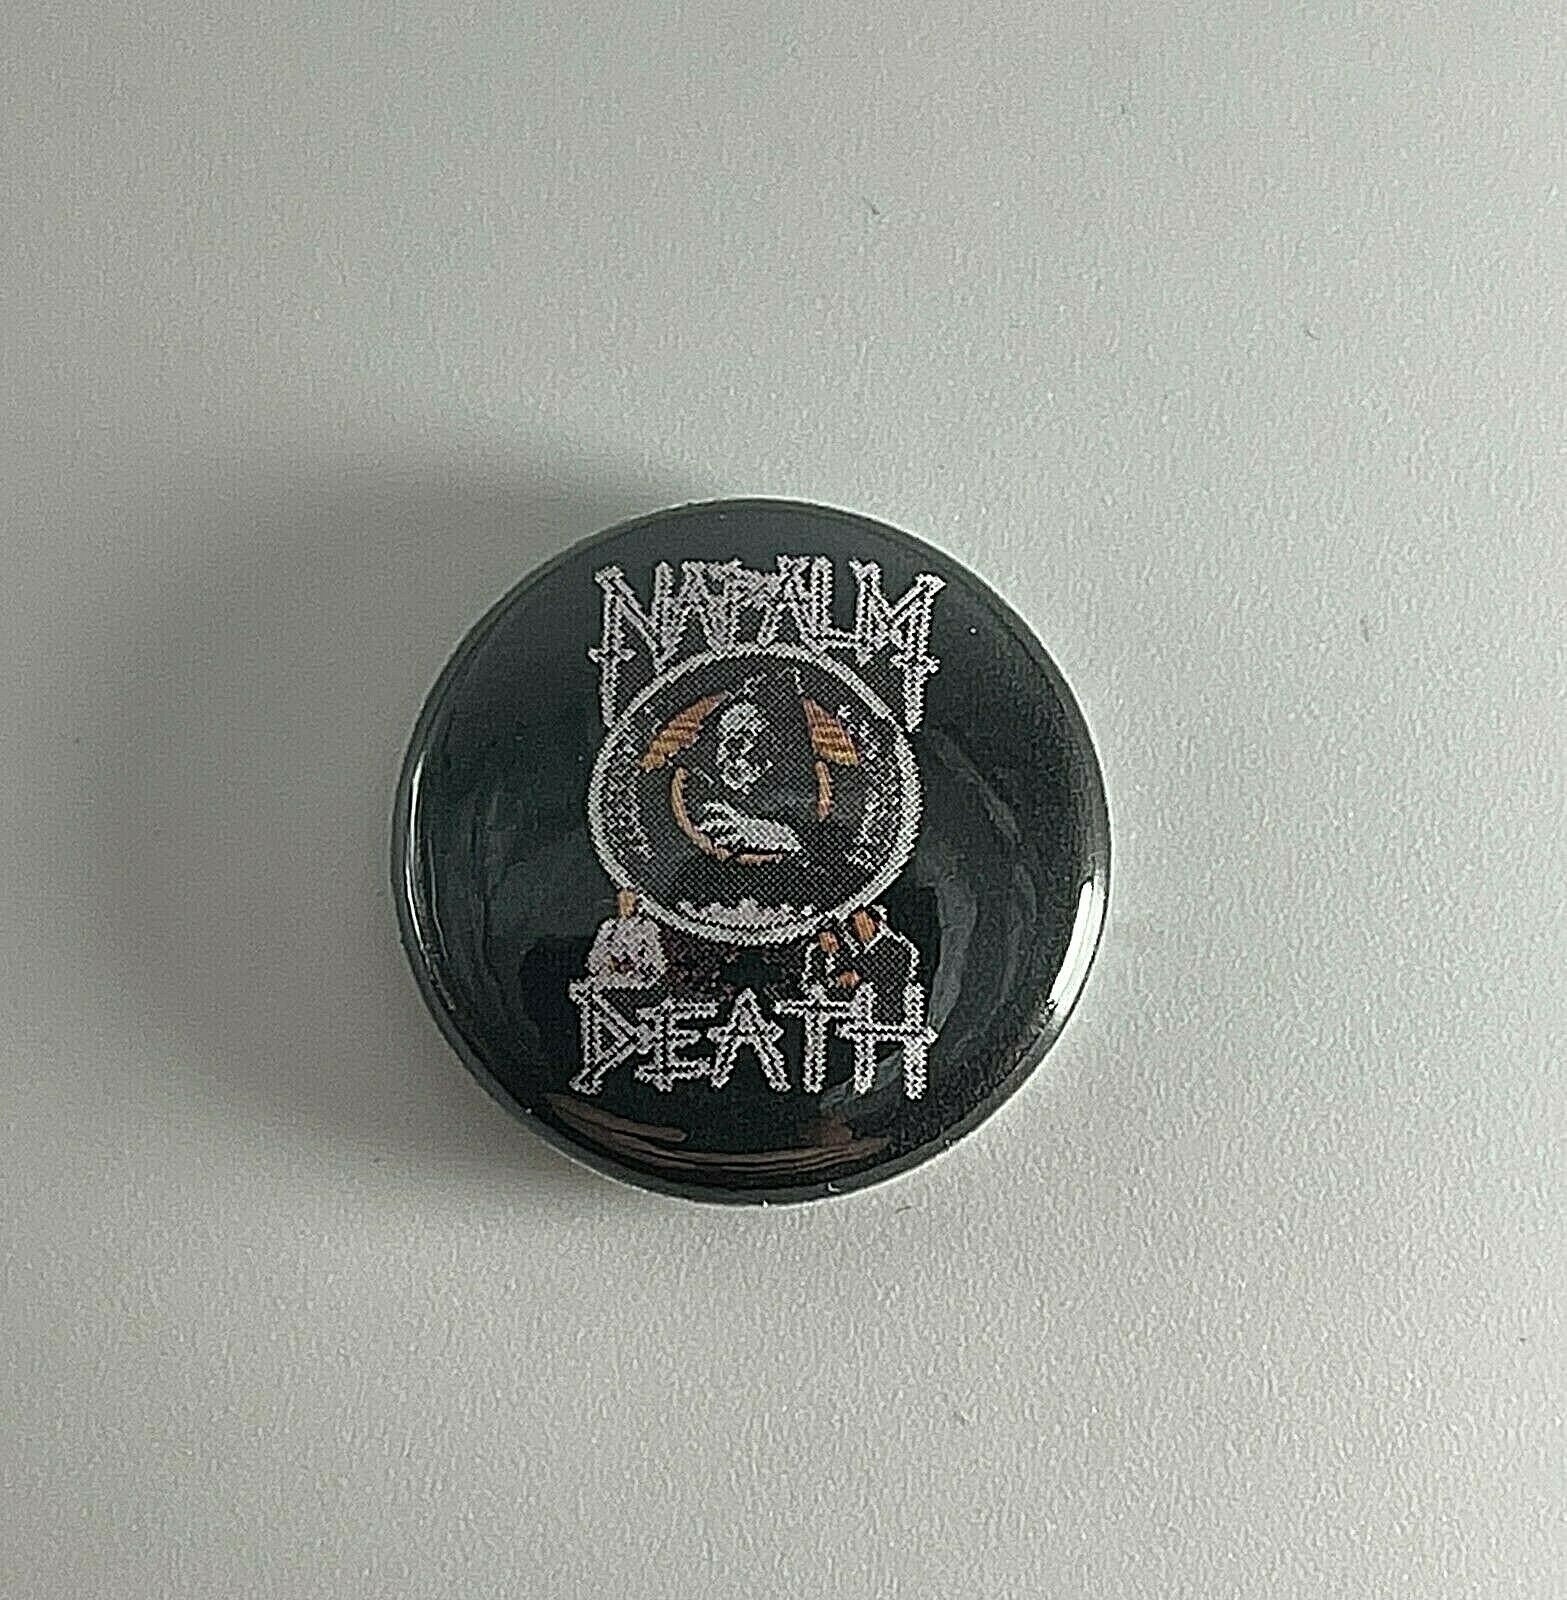 Napalm Tod Leben? 1" Button N011B Pin Badge von Heavylowmerchandise